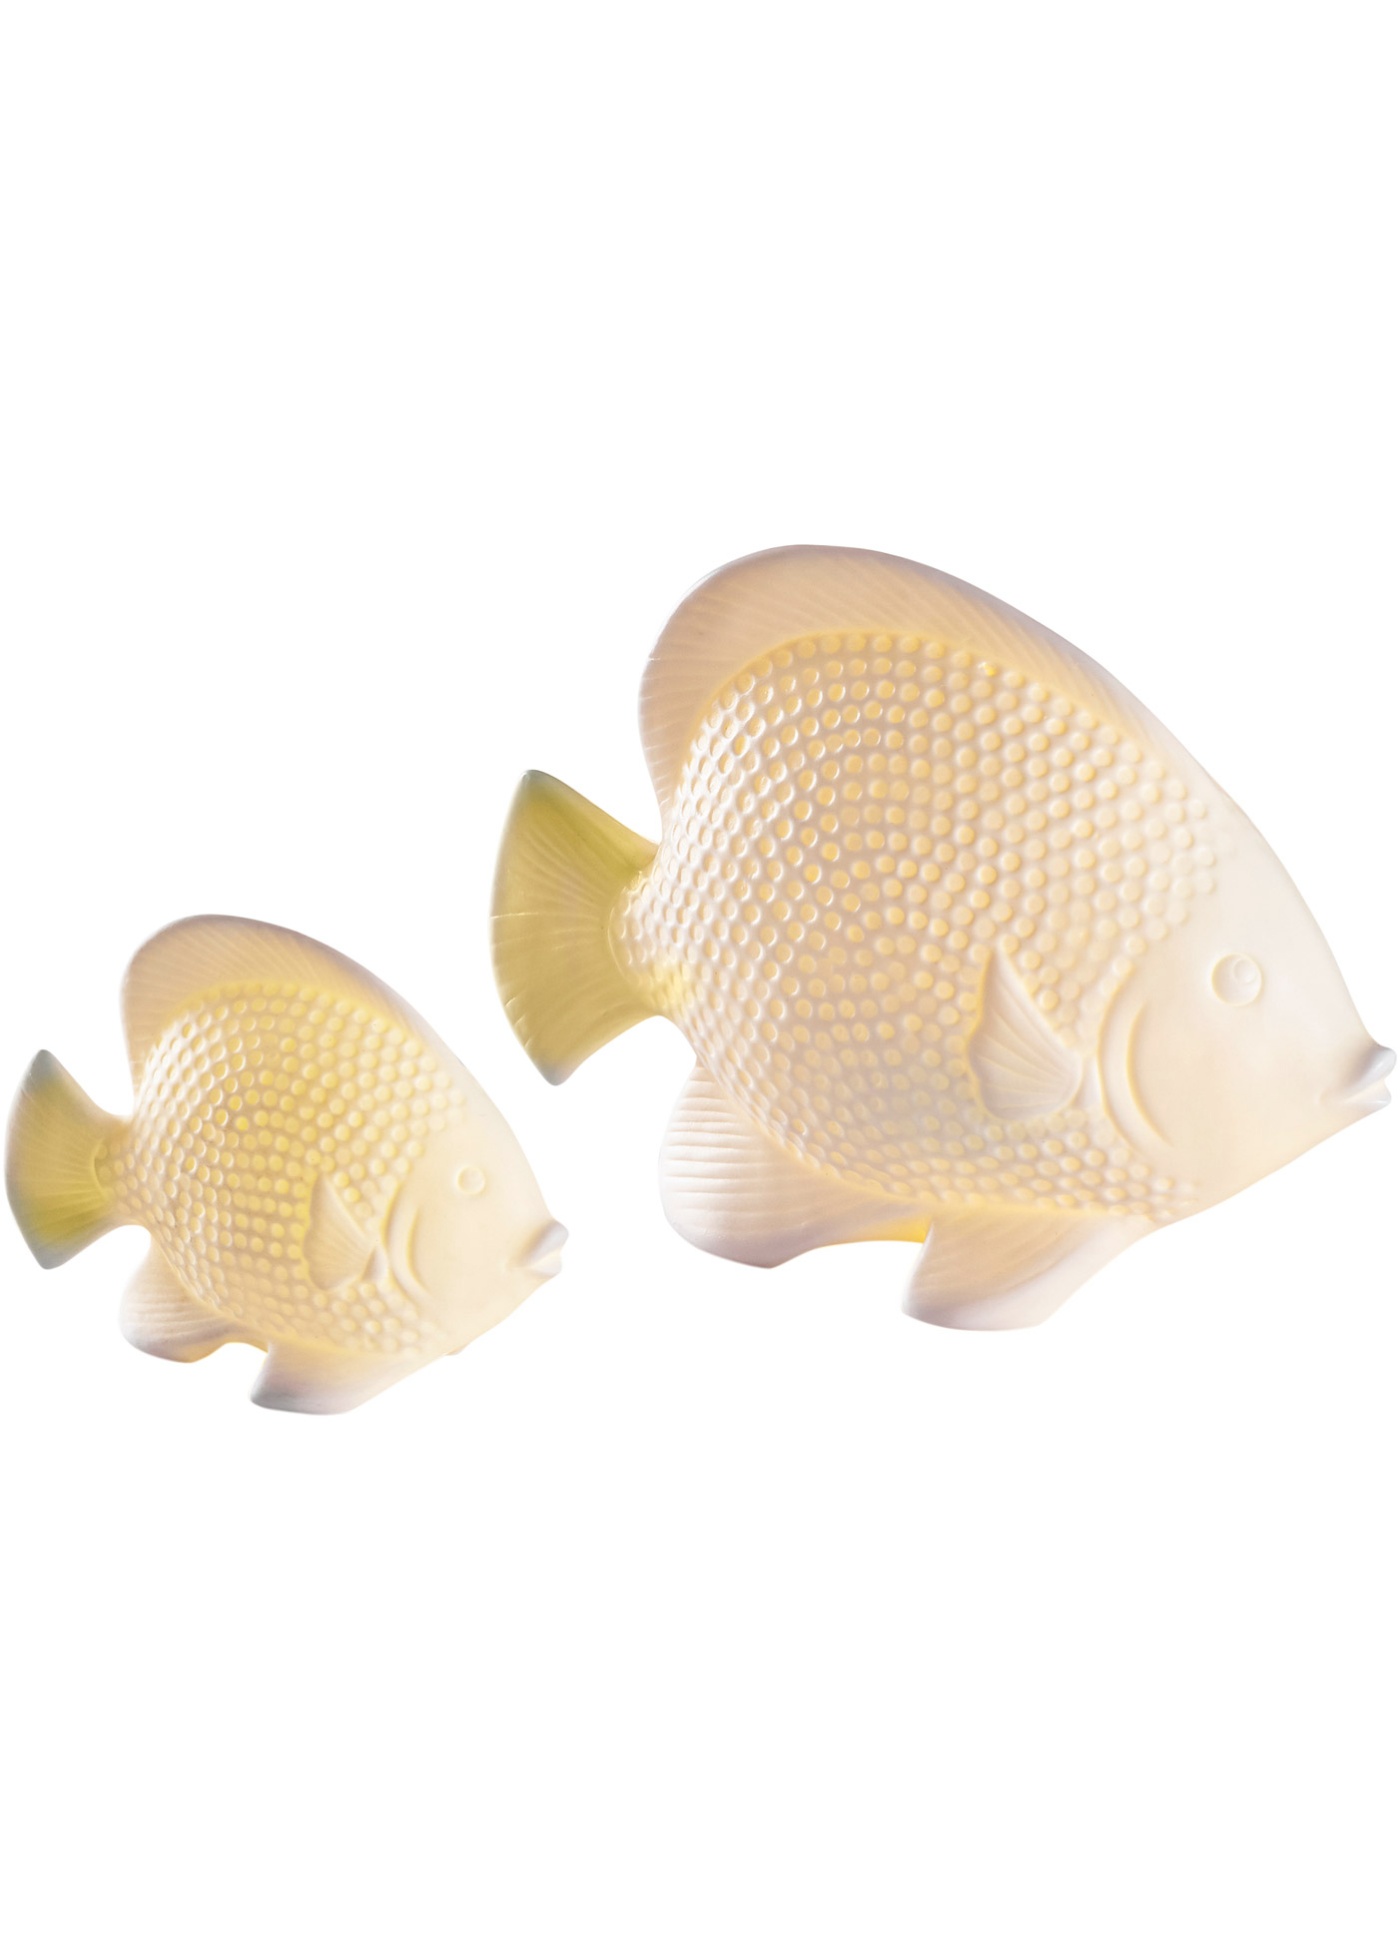 Décoration poisson LED (Ens. 2 pces.)